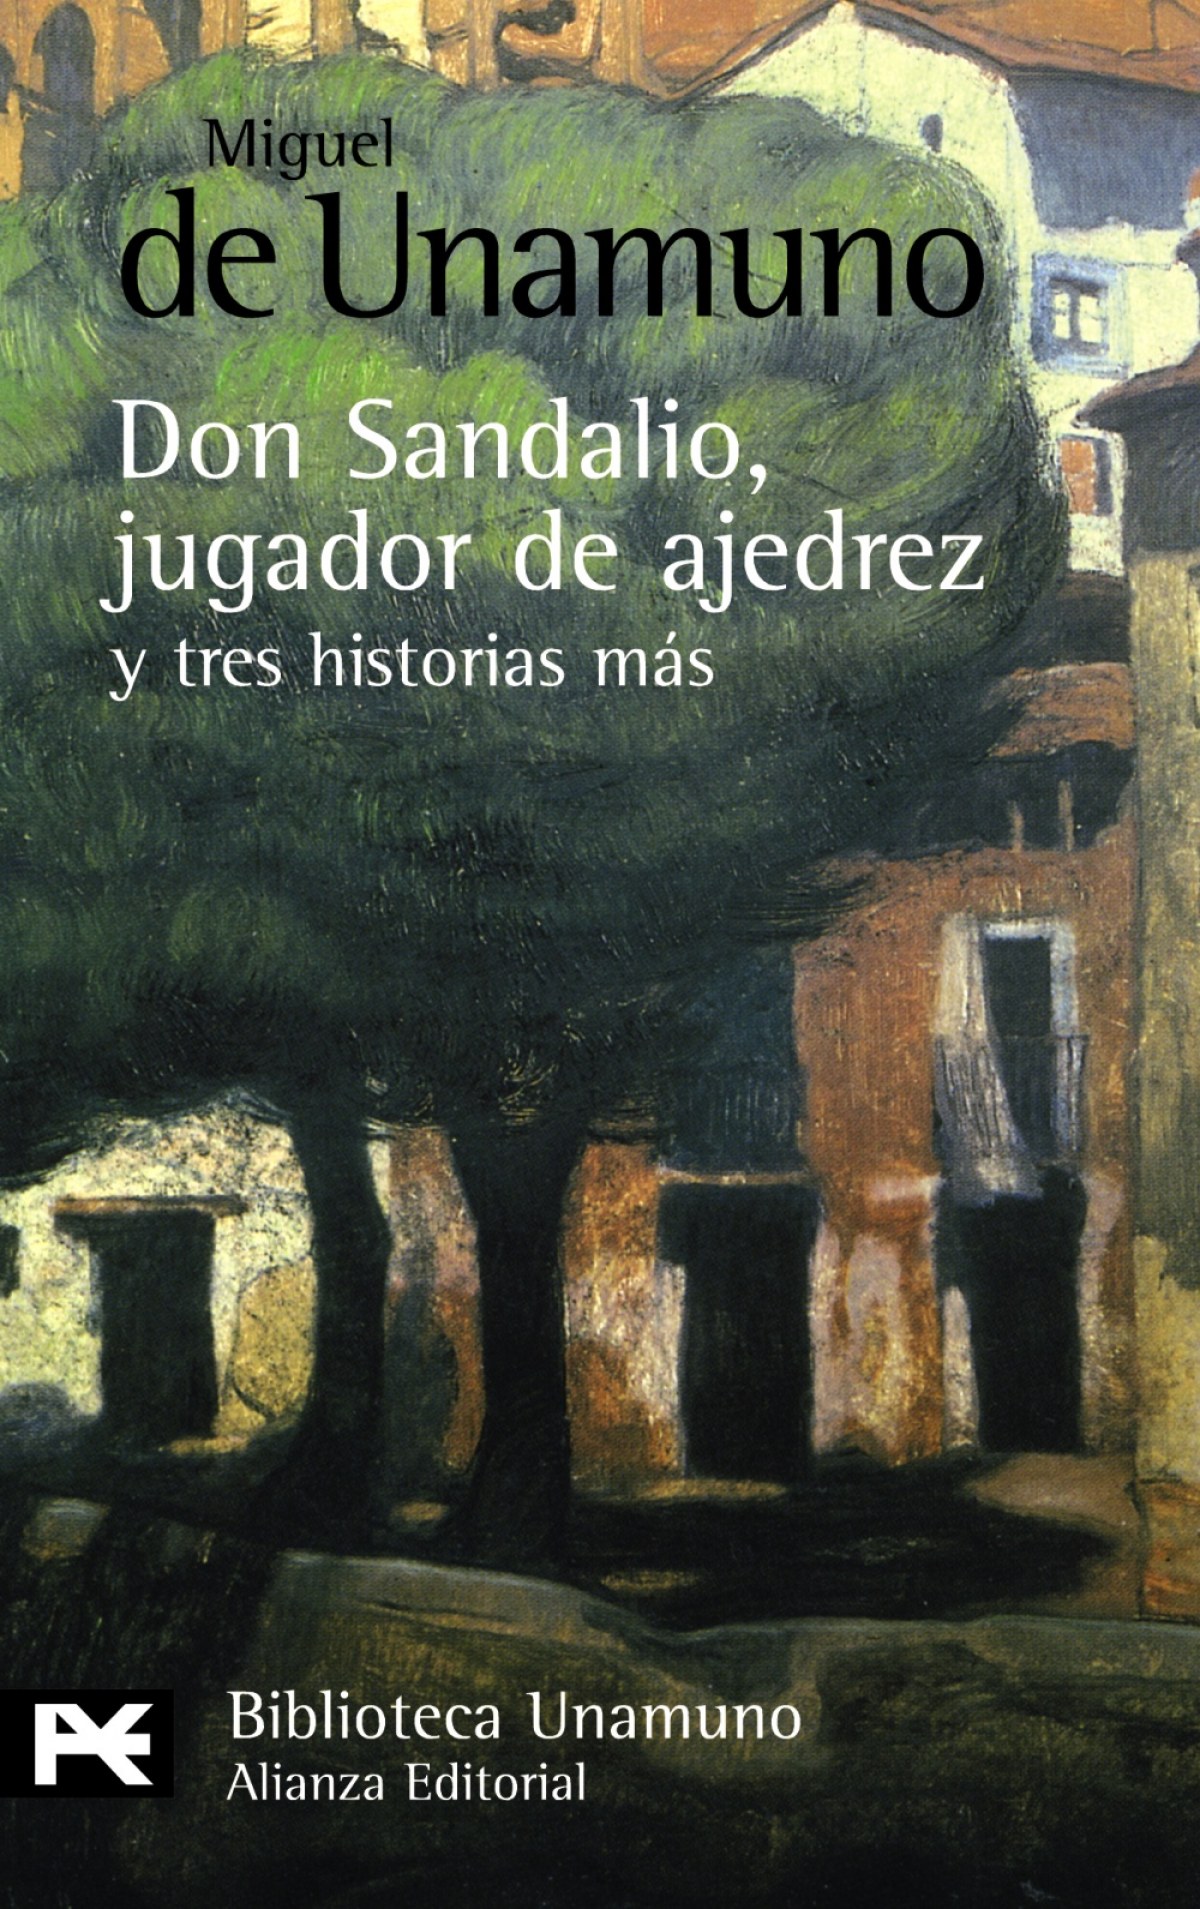 La novela de Don Sandalio, Jugador de ajedrez, y tres historias más - Unamuno, Miguel de